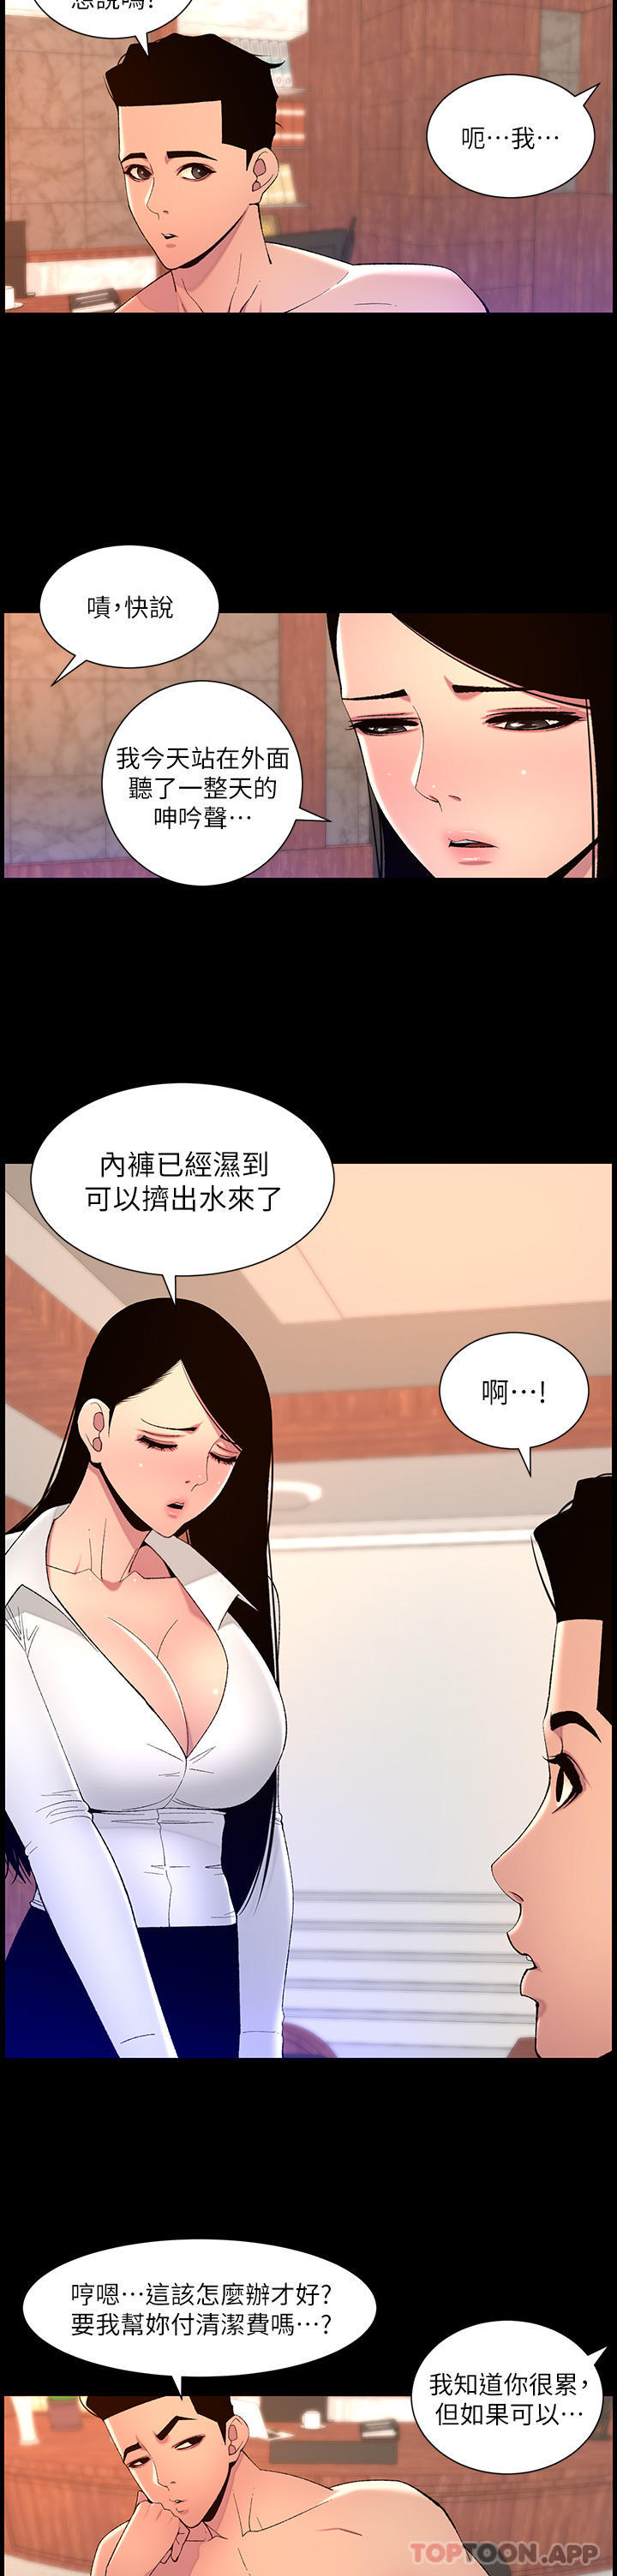 韩国污漫画 帝王App 第68话-把我弄湿就得负责 21